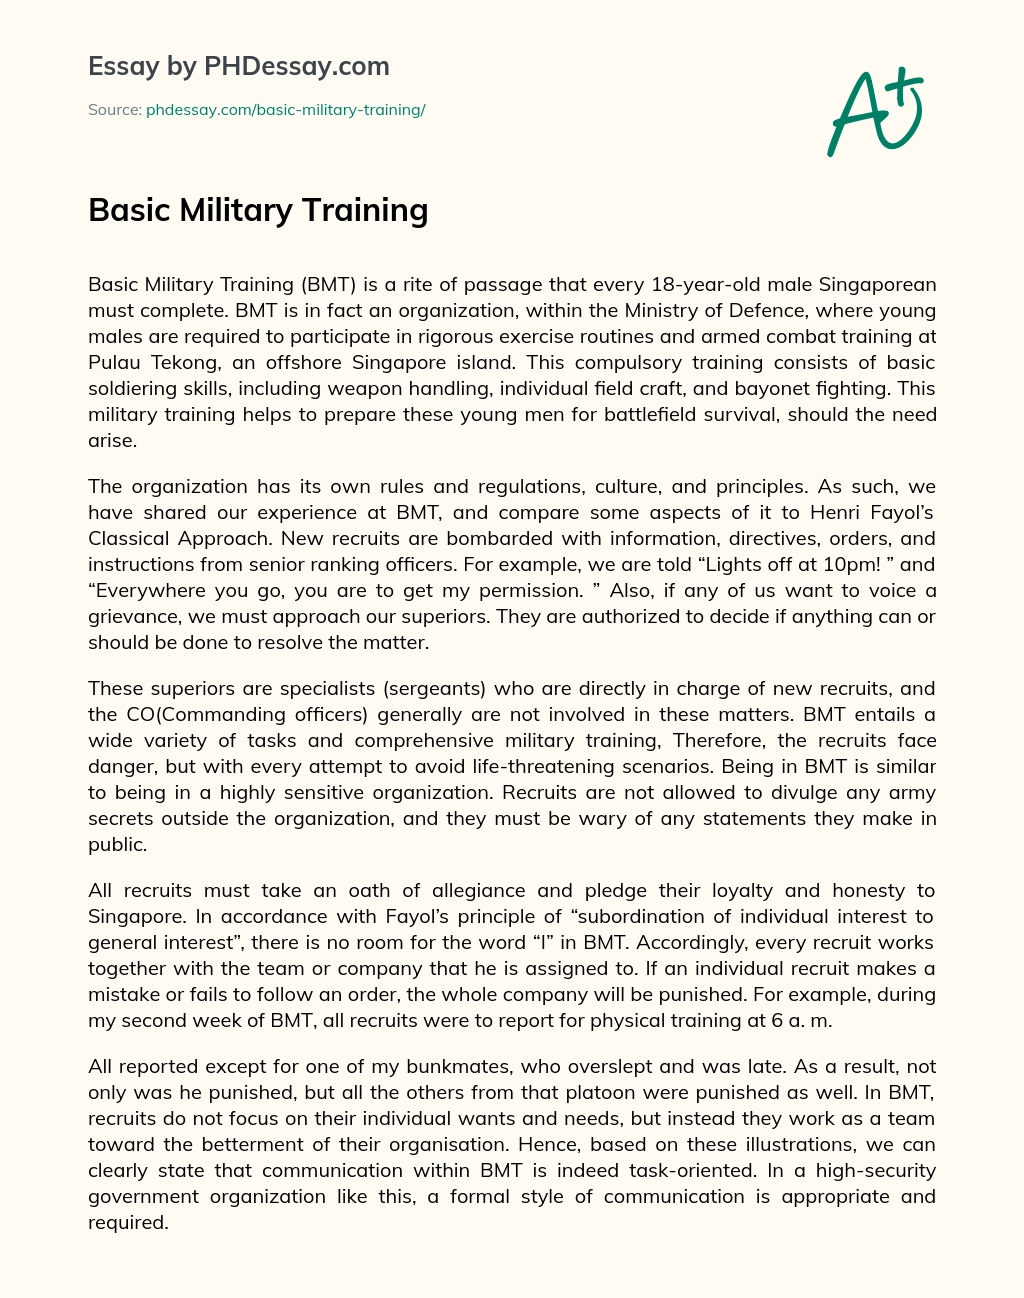 Basic Military Training essay